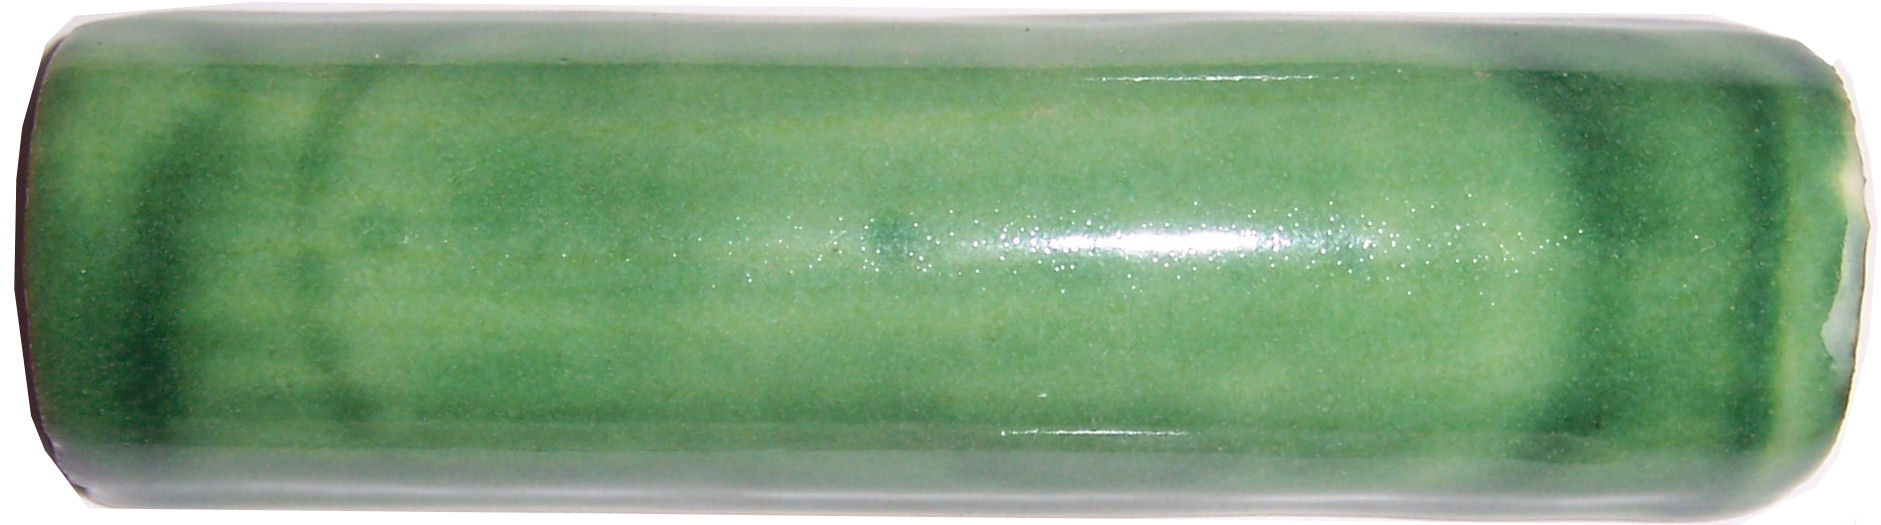 TalaMex Green Talavera Clay Pencil